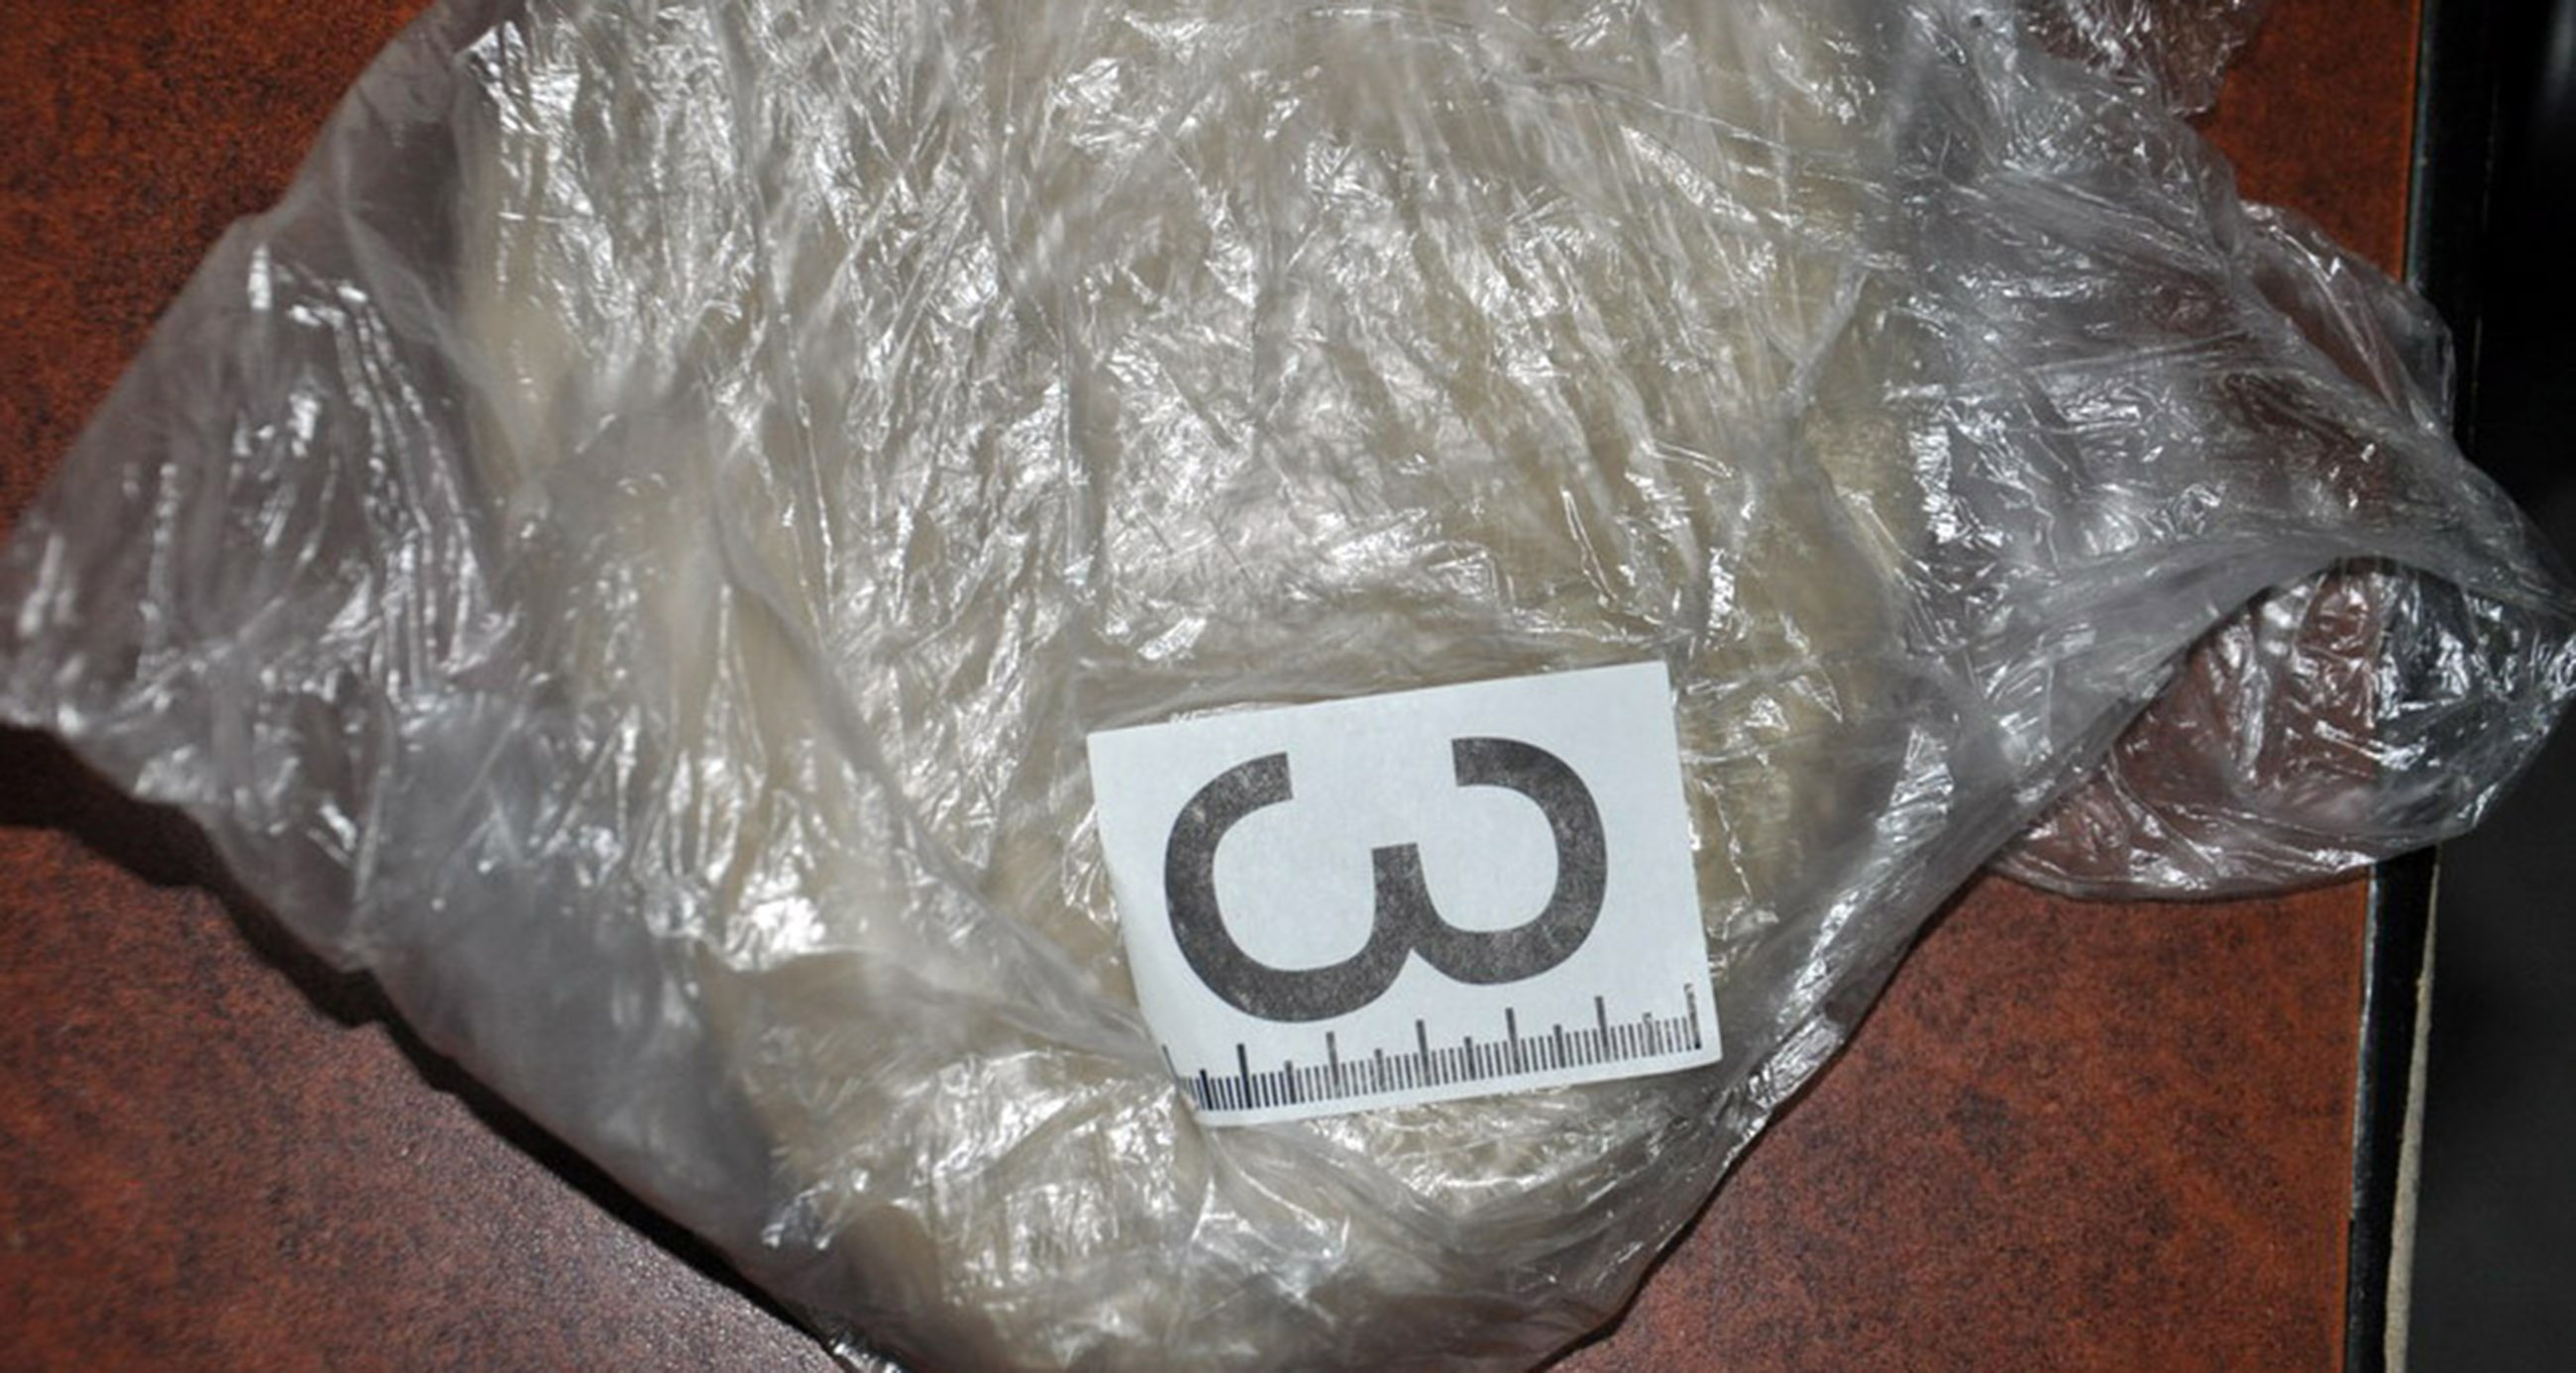 Полиција пронашла 1,4 килограма хероина у аутомобилу осумњиченог